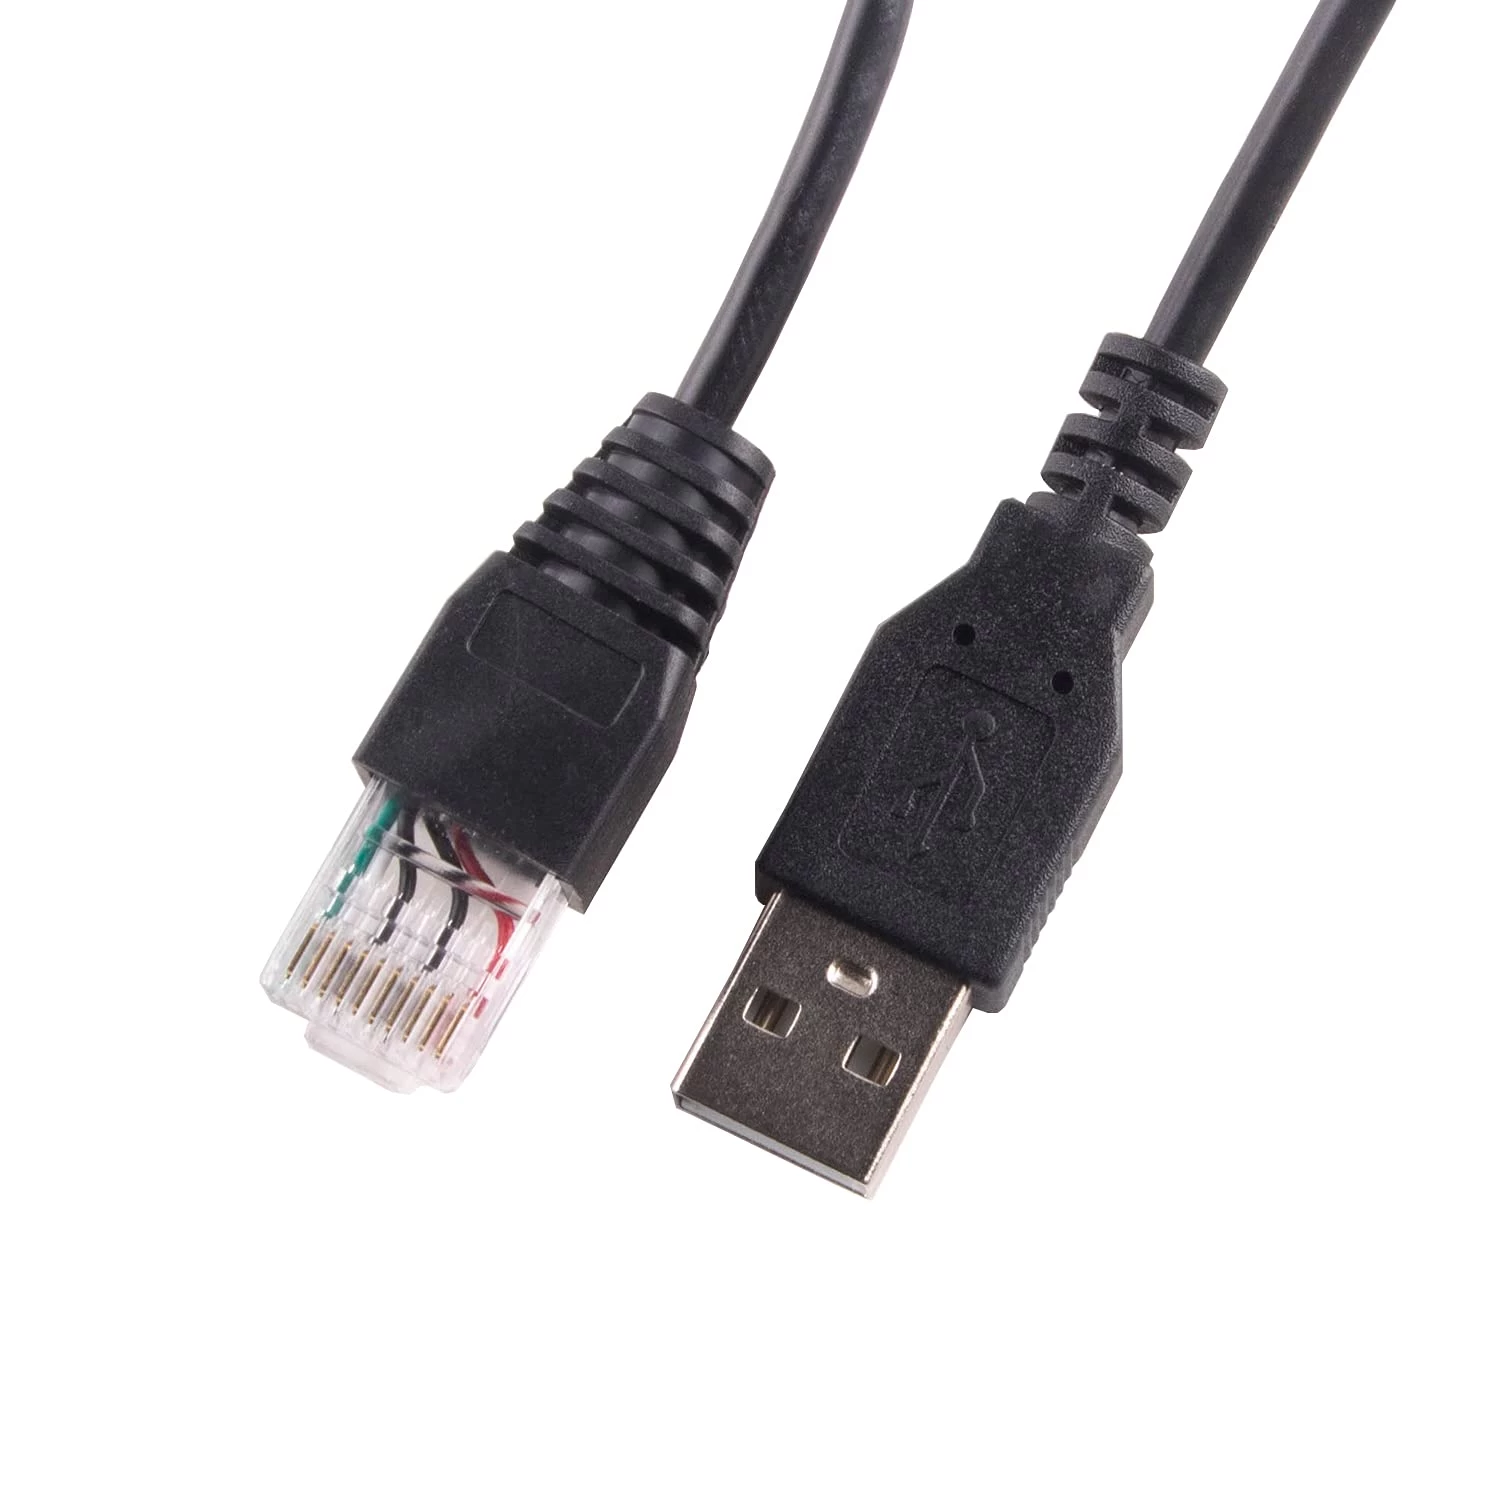 用于智能 UPS 的 APC 电缆 USB 转 RJ50 控制电缆